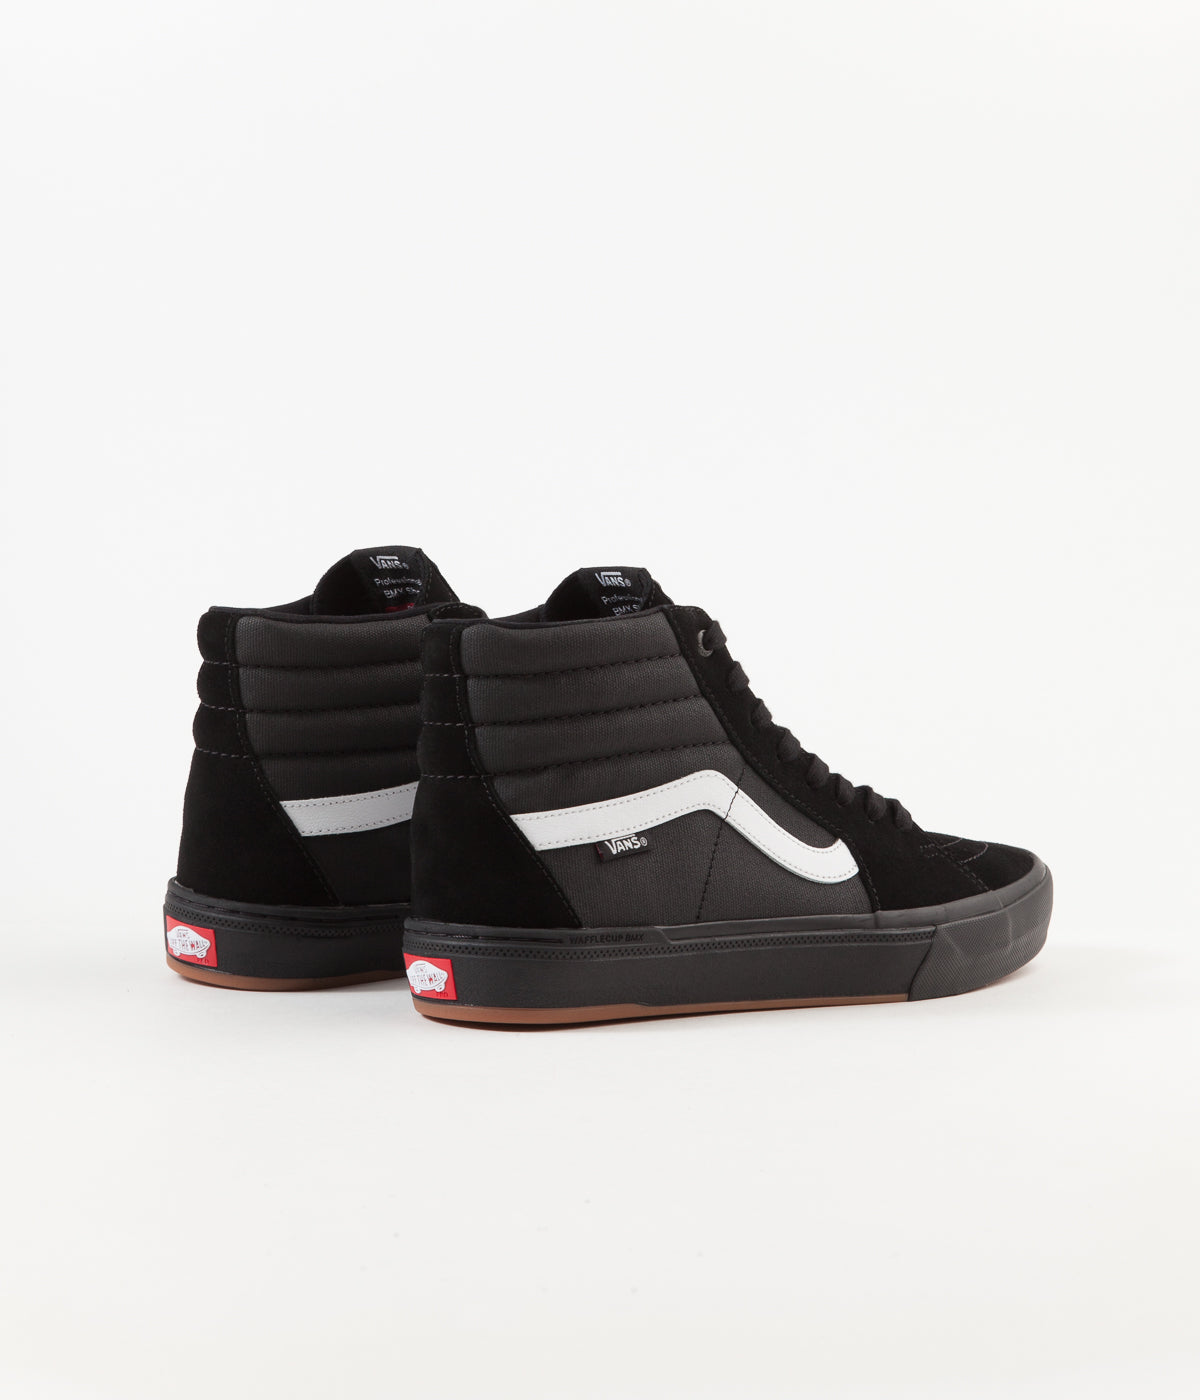 shoes Vans BMX Old Skool - Black/Teal - men´s - blackcomb-shop.eu